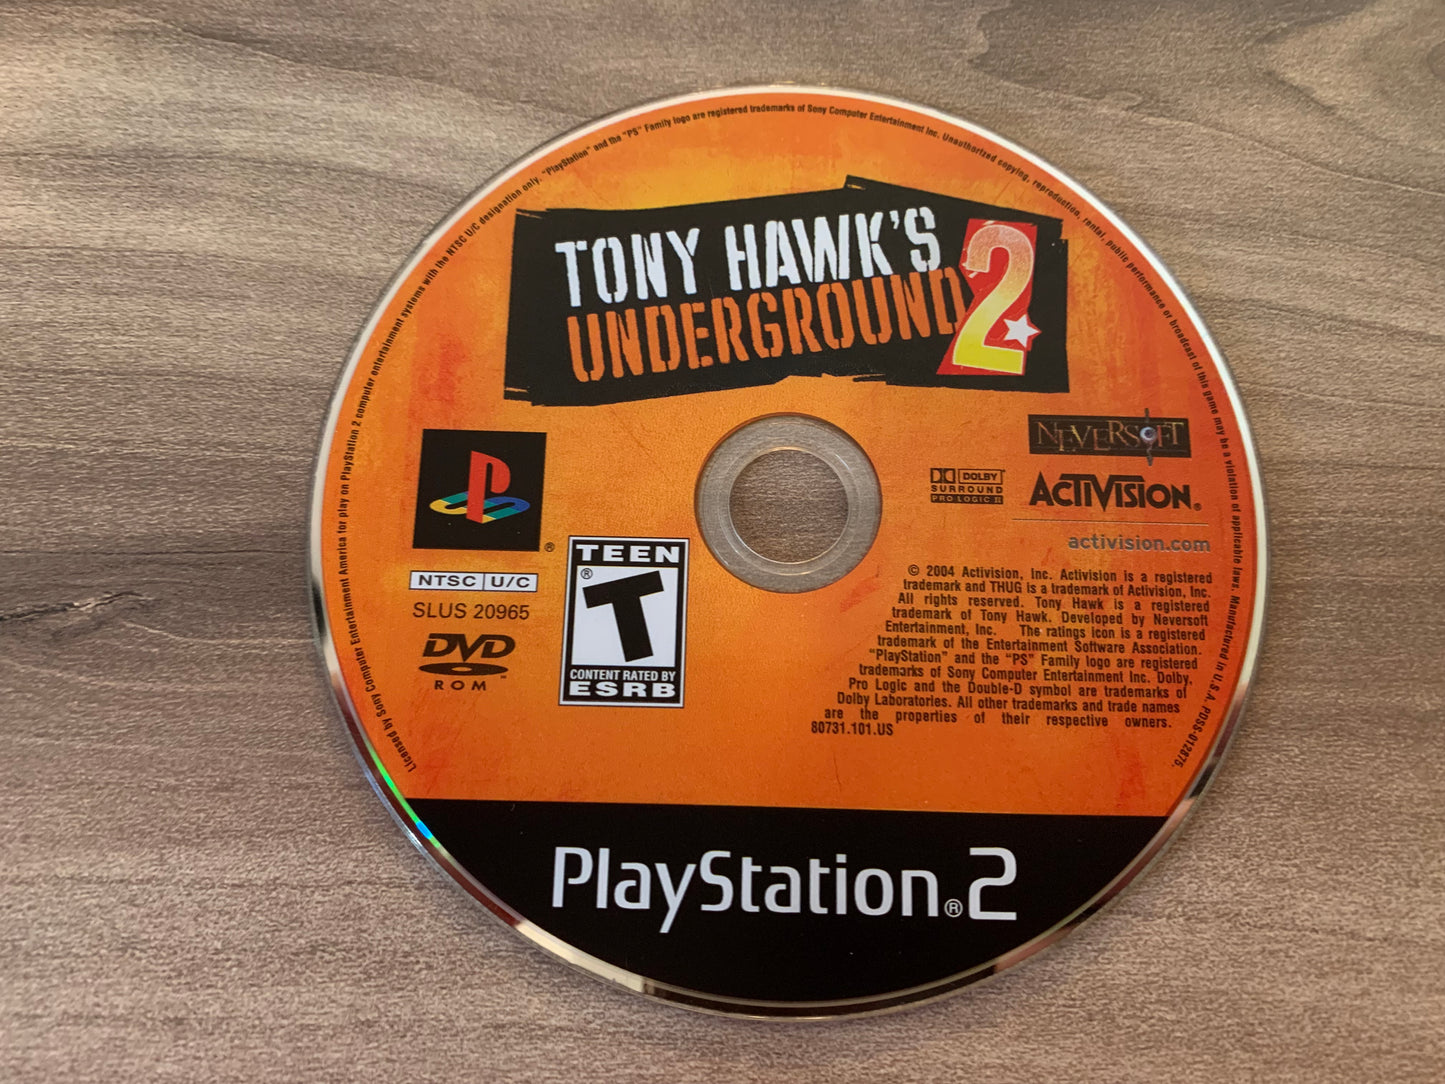 SONY PLAYSTATiON 2 [PS2] | TONY HAWKS UNDERGROUND 2